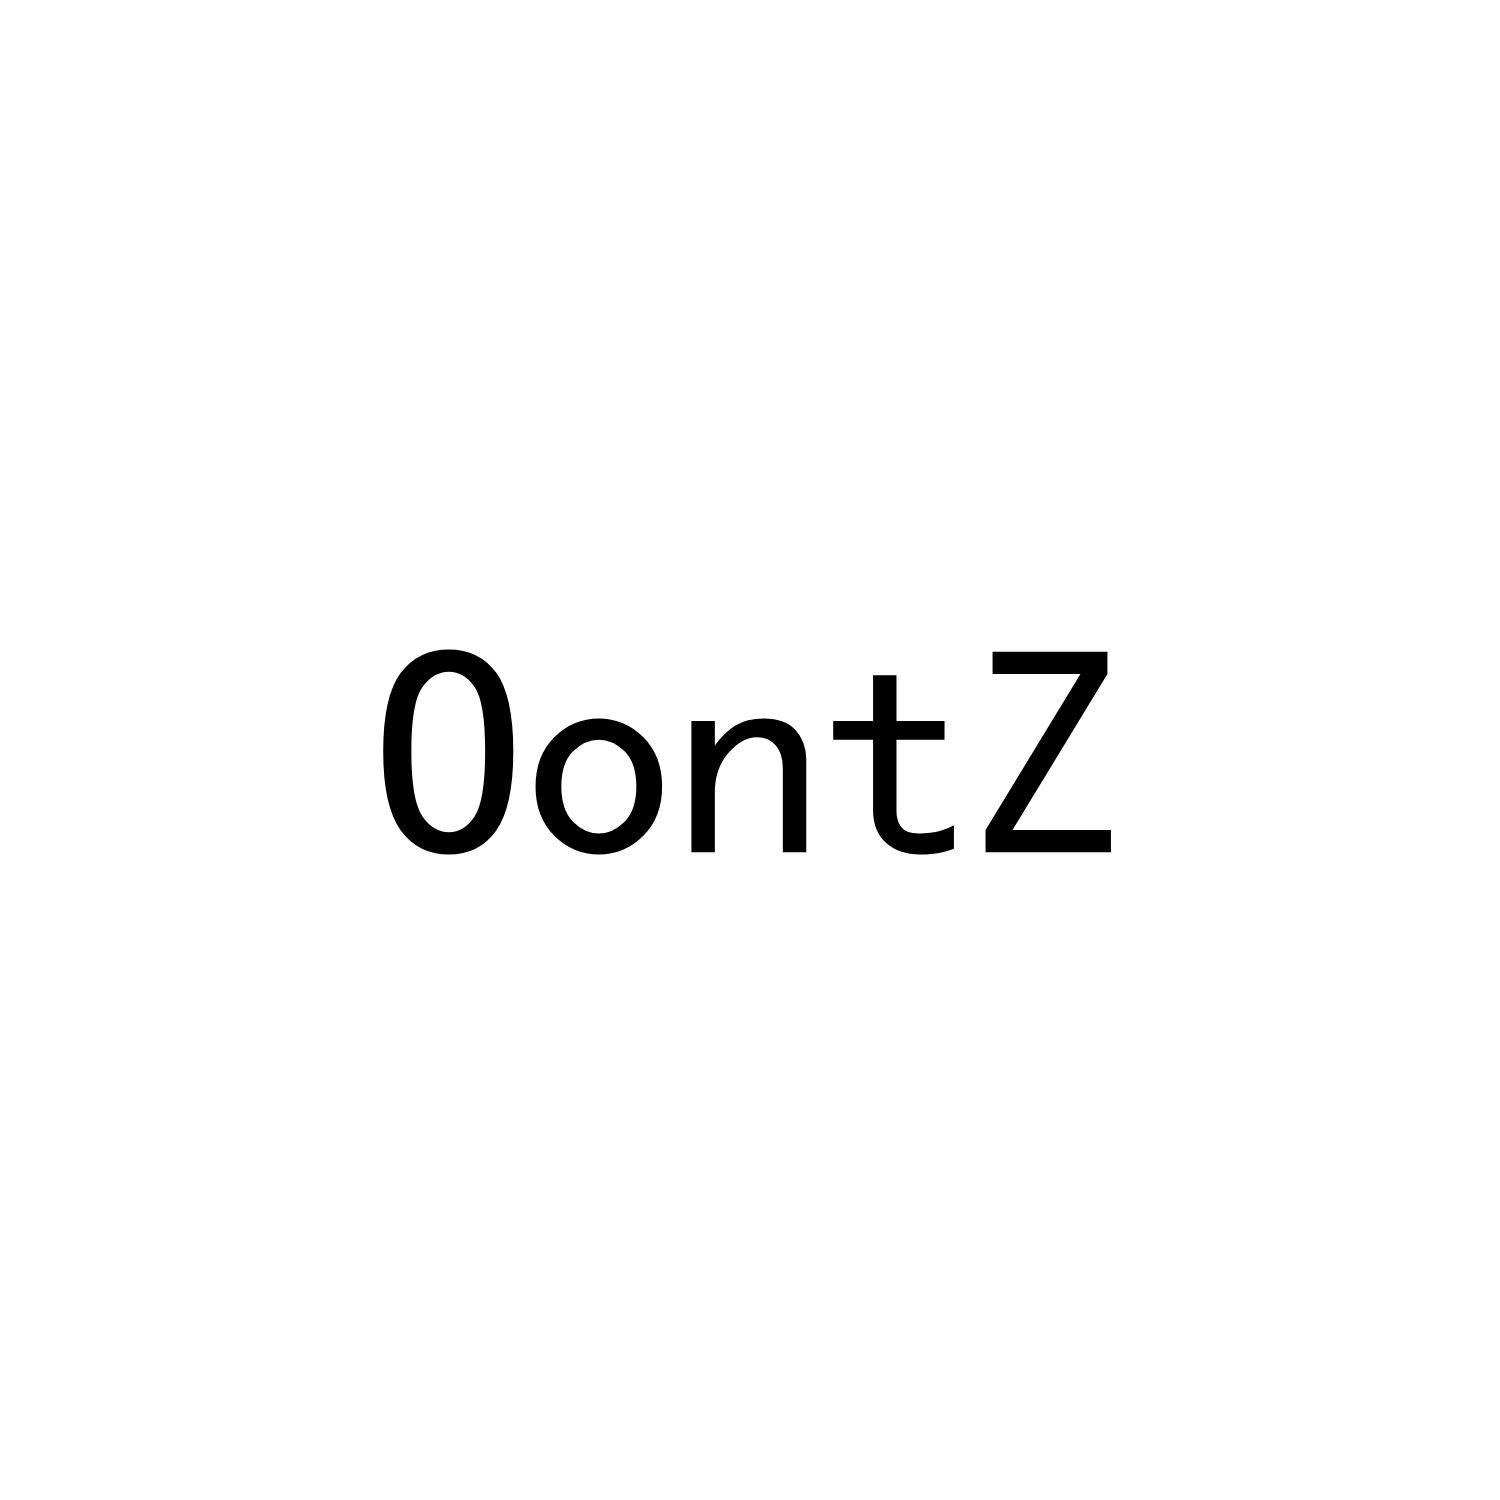 OONTZ